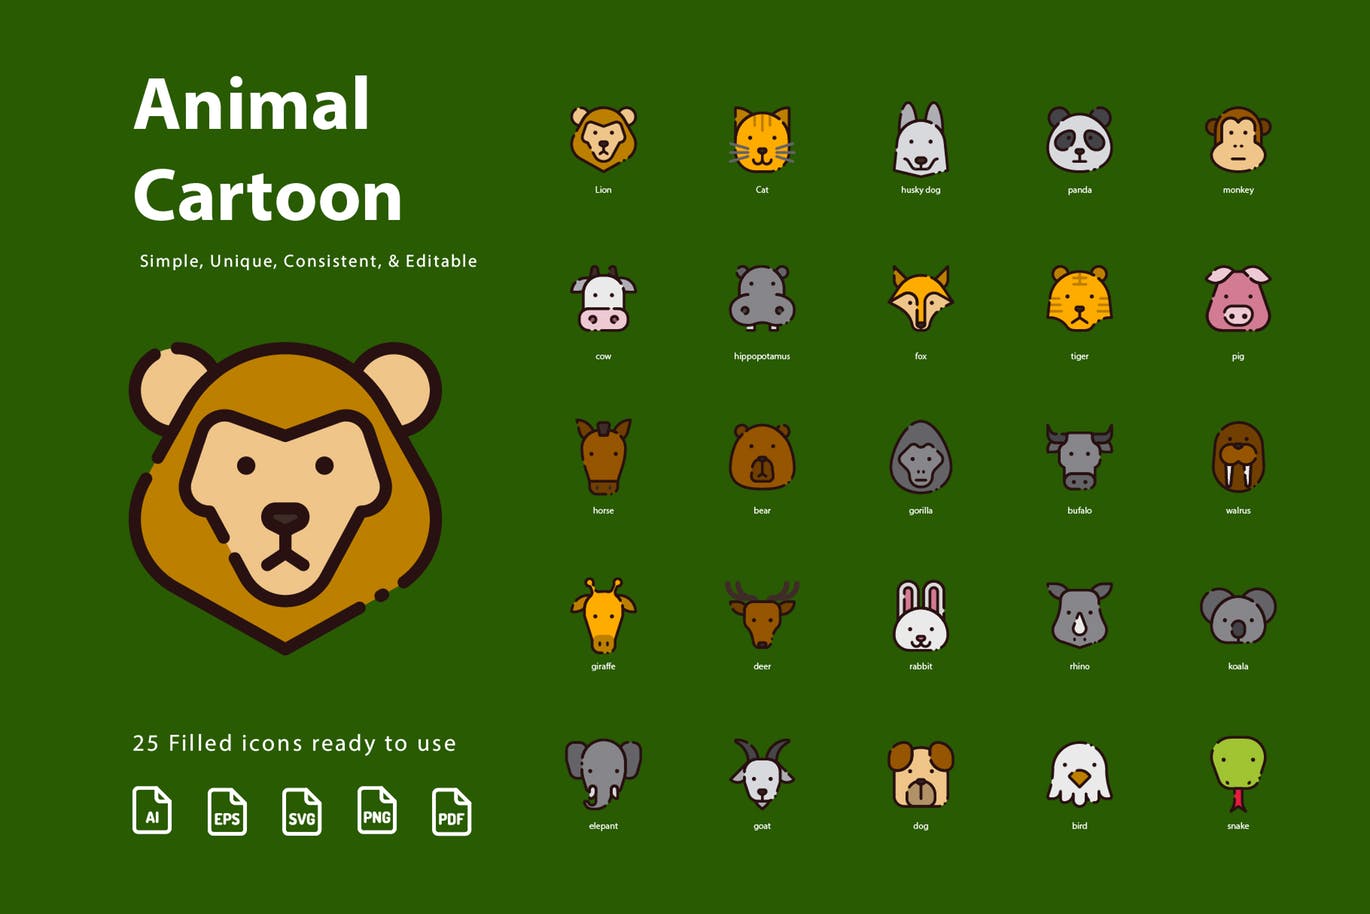 动物卡通形象填充图标素材 Animal Cartoon (Filled)插图(2)